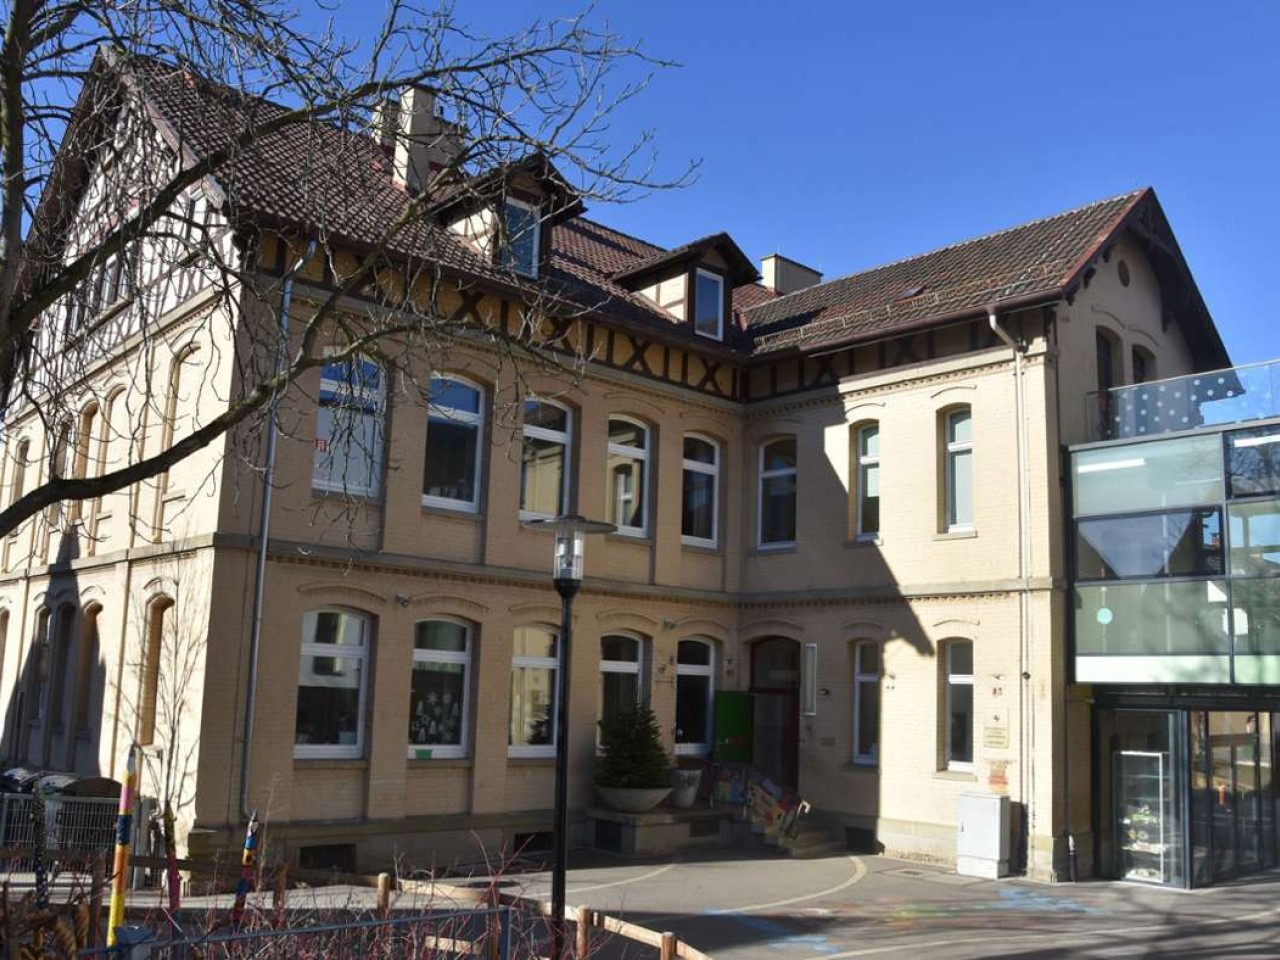 Schule in Untertürkheim: Schulsanierung wieder verschoben